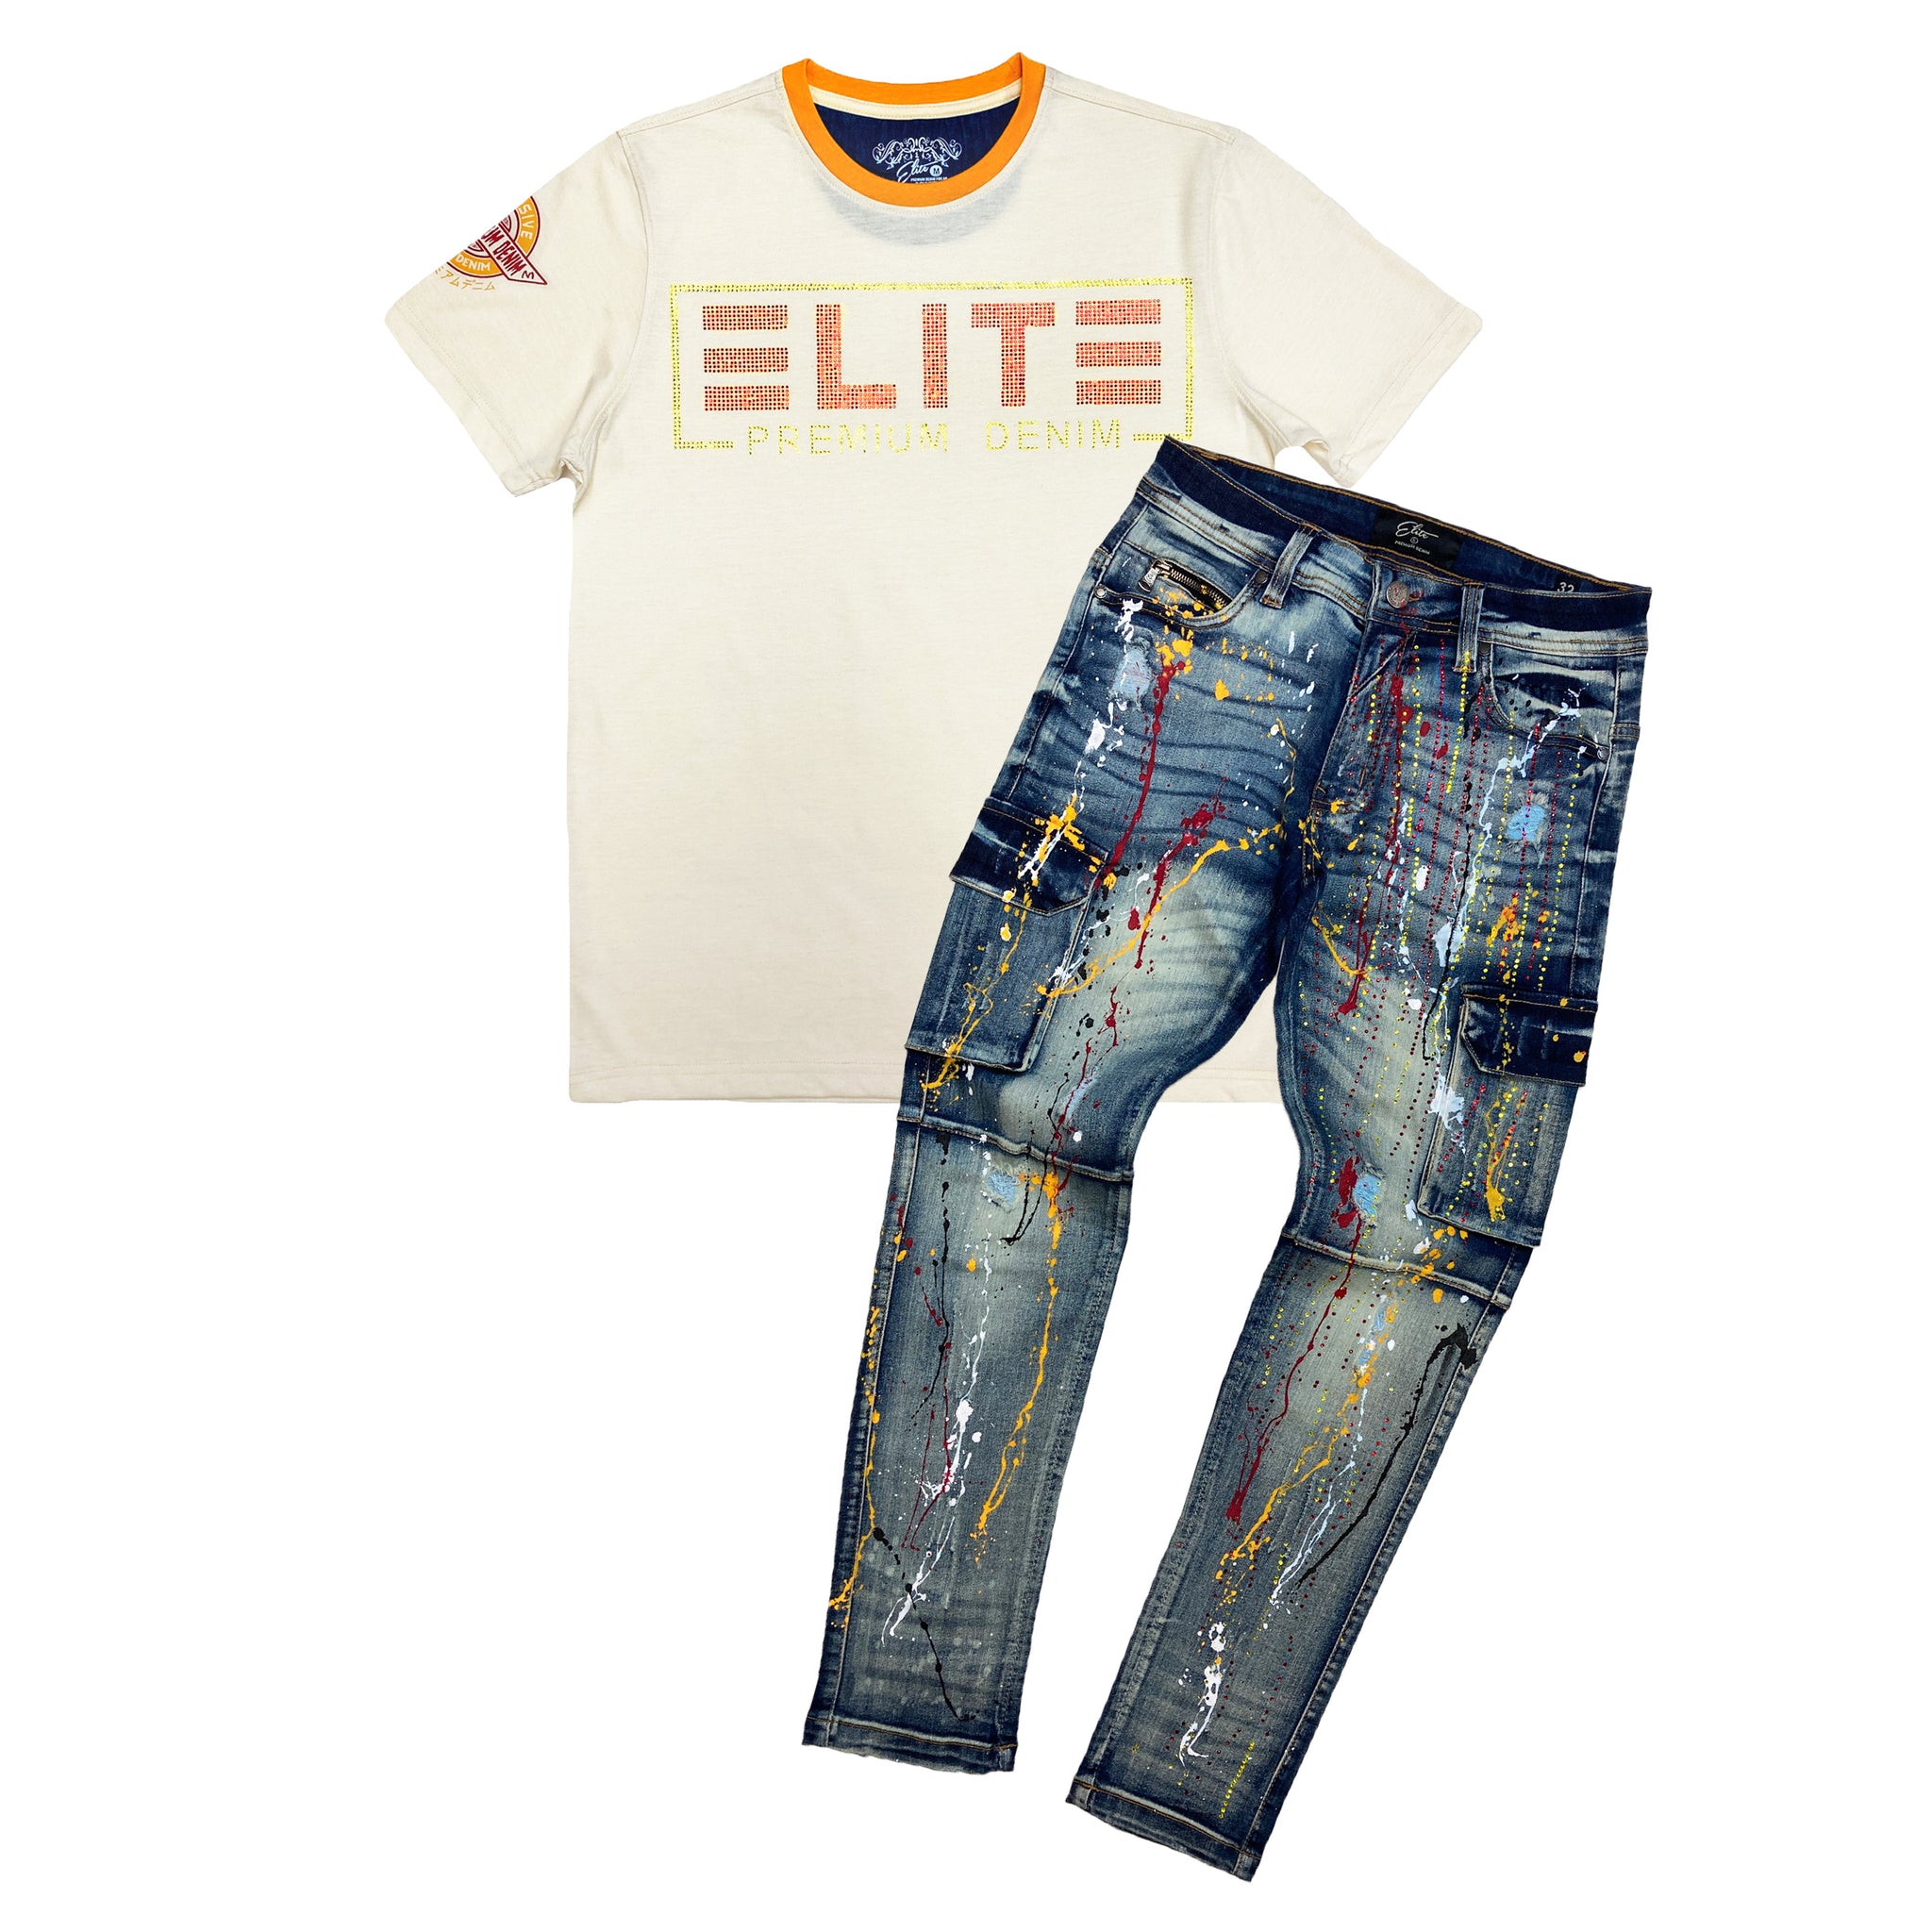 Fire Stone Men's Premium Cargo Jeans - Elite Premium Denim